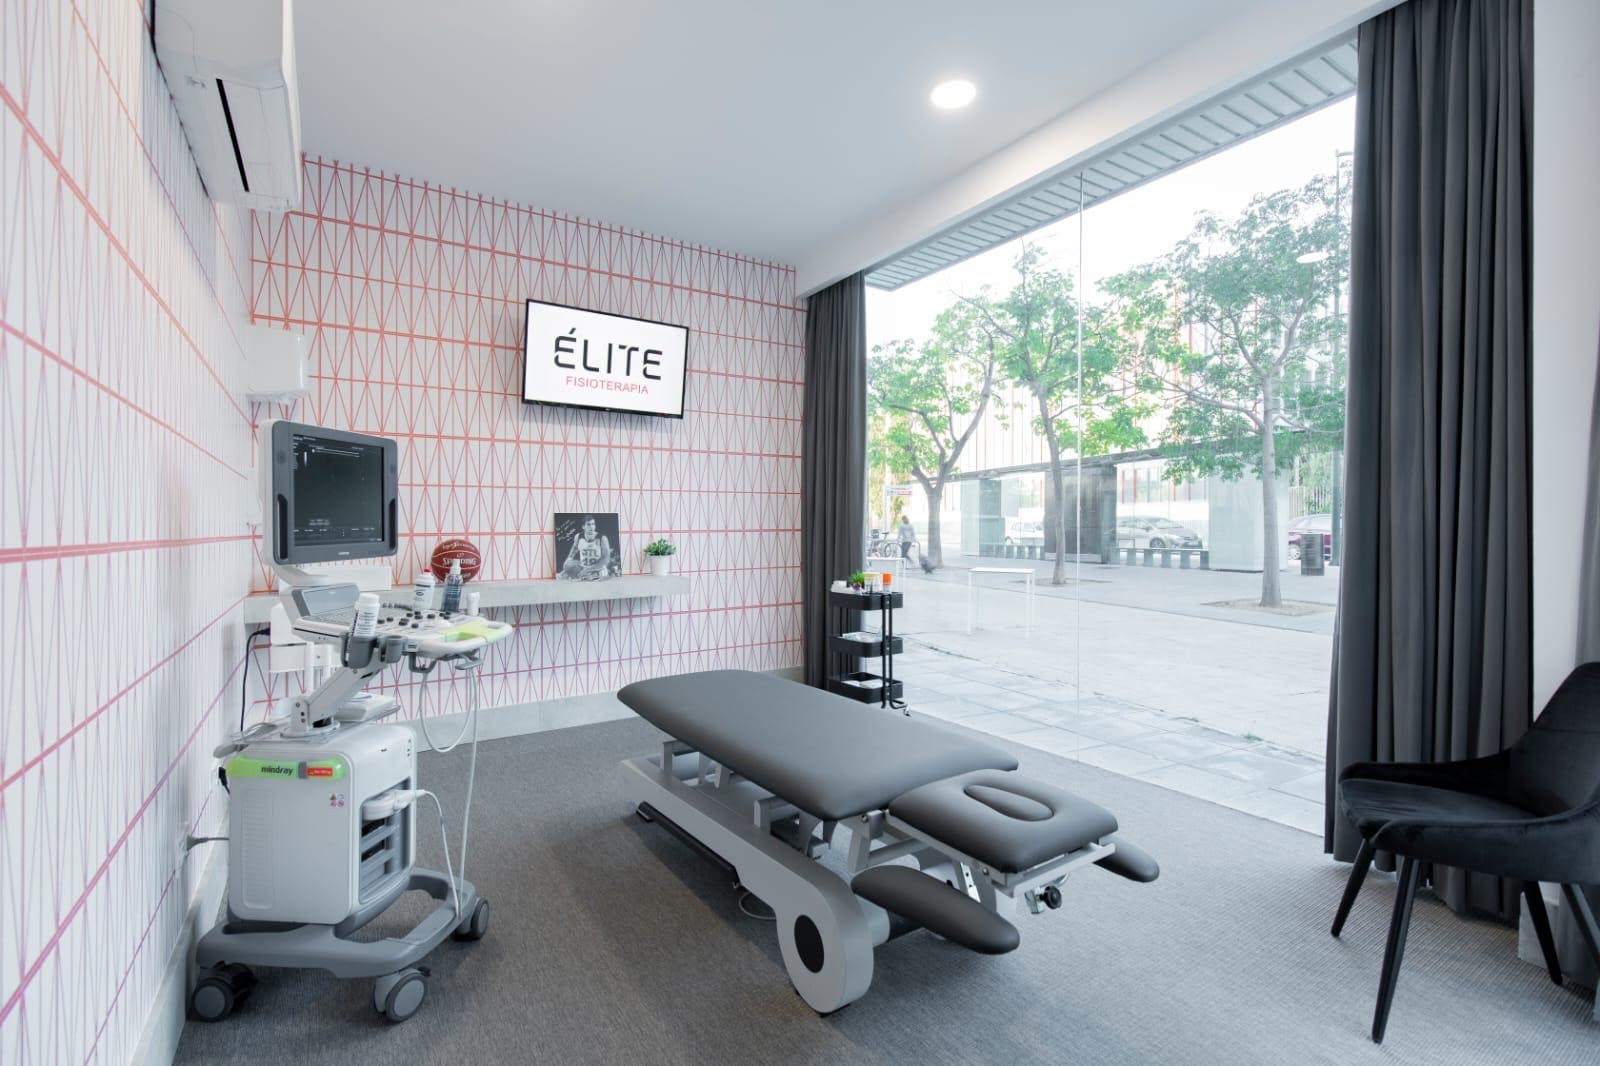 Instalaciones de Elite Fisioterapia Zaragoza